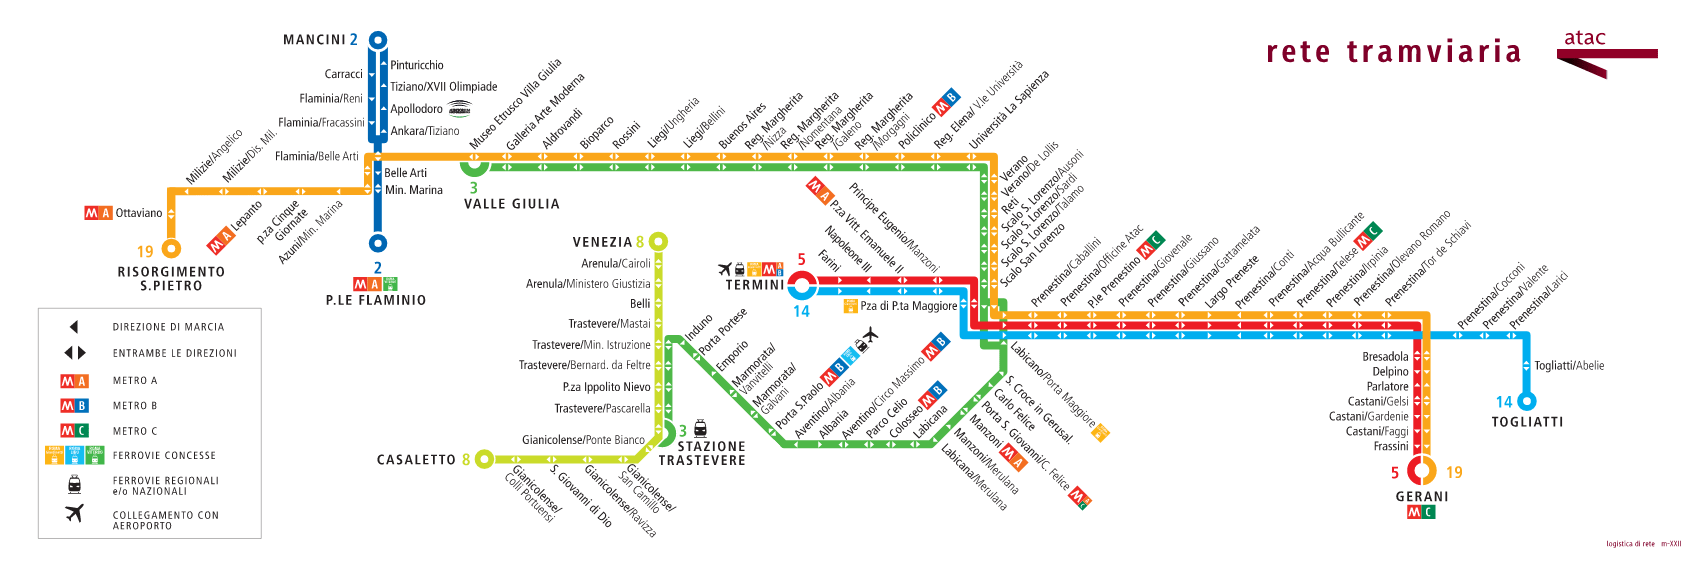 rome city tour map